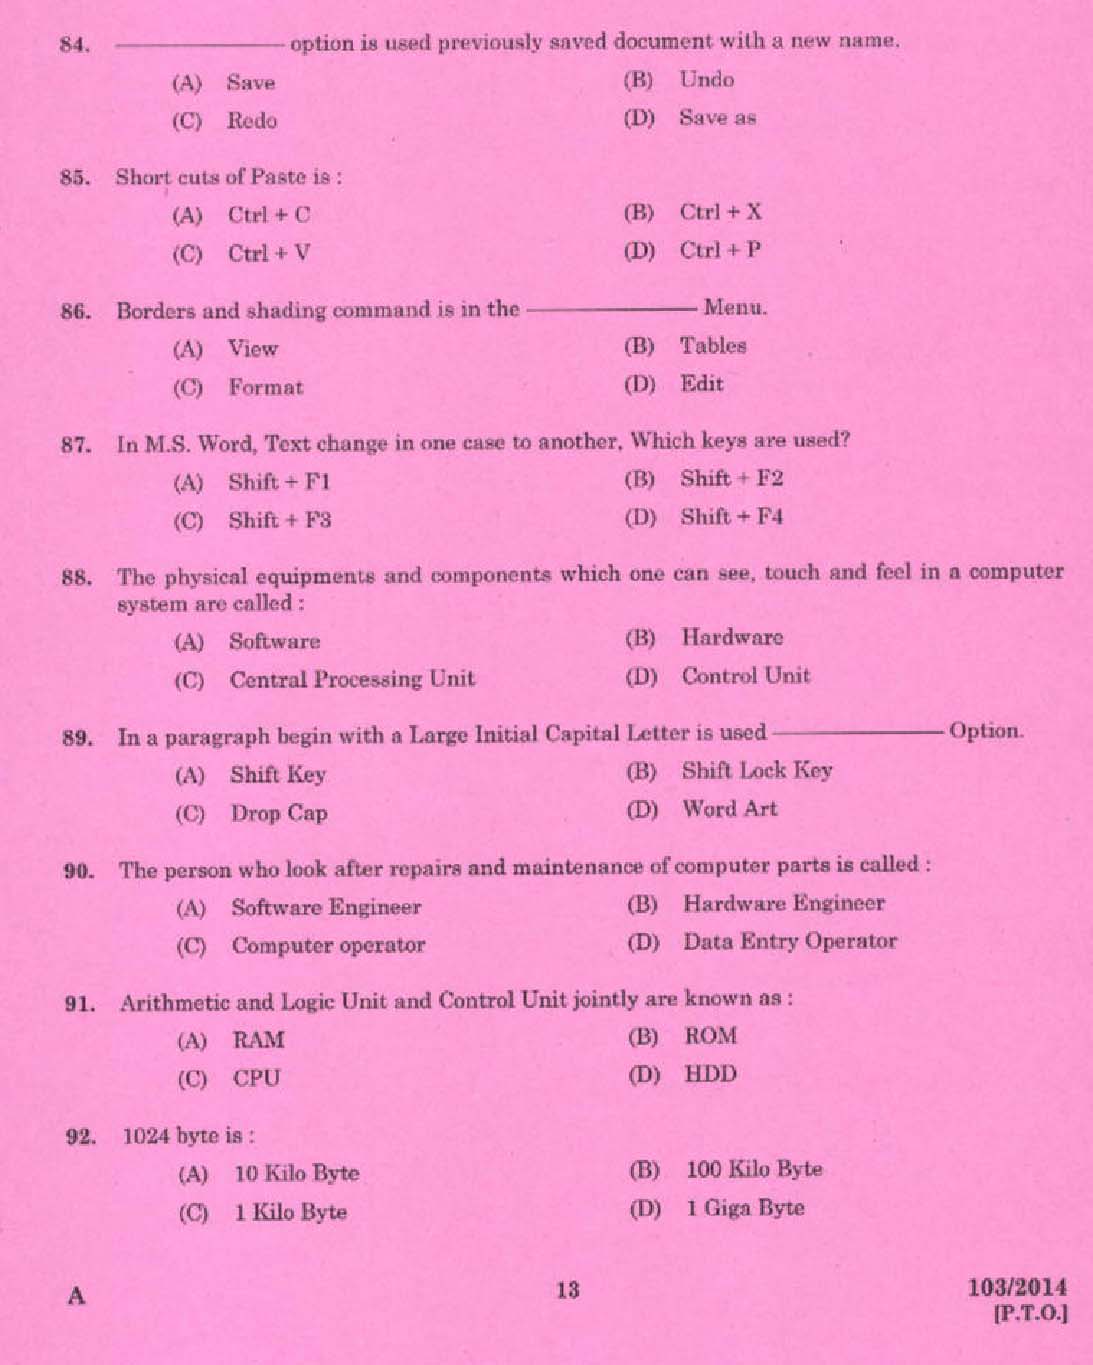 Kerala PSC Stenographer Grade IV Exam 2014 Question Paper Code 1032014 11